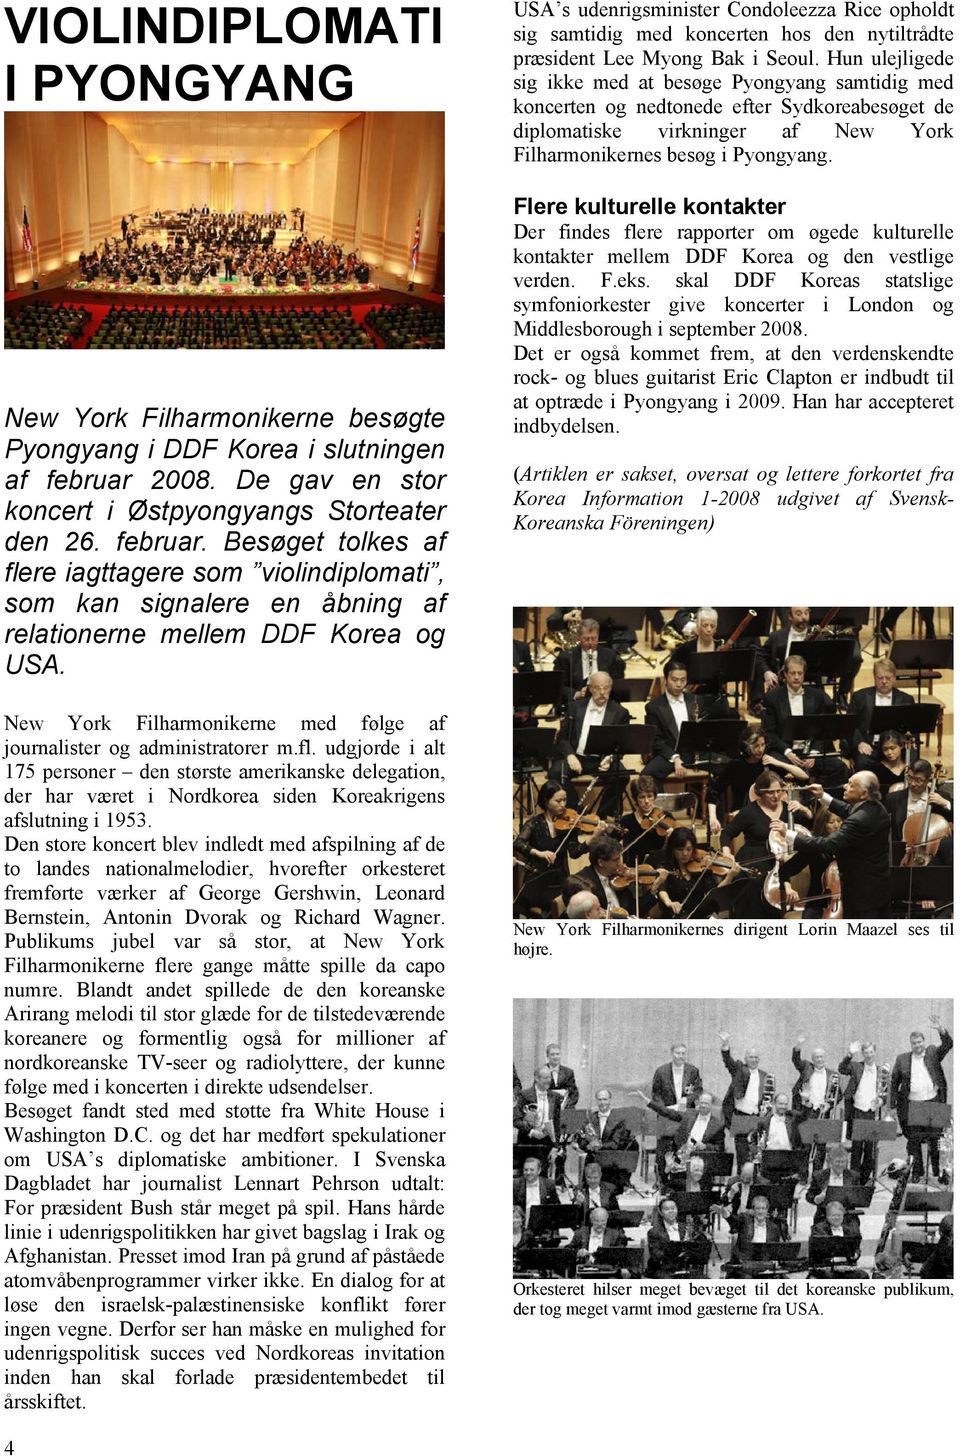 New York Filharmonikerne med følge af journalister og administratorer m.fl.